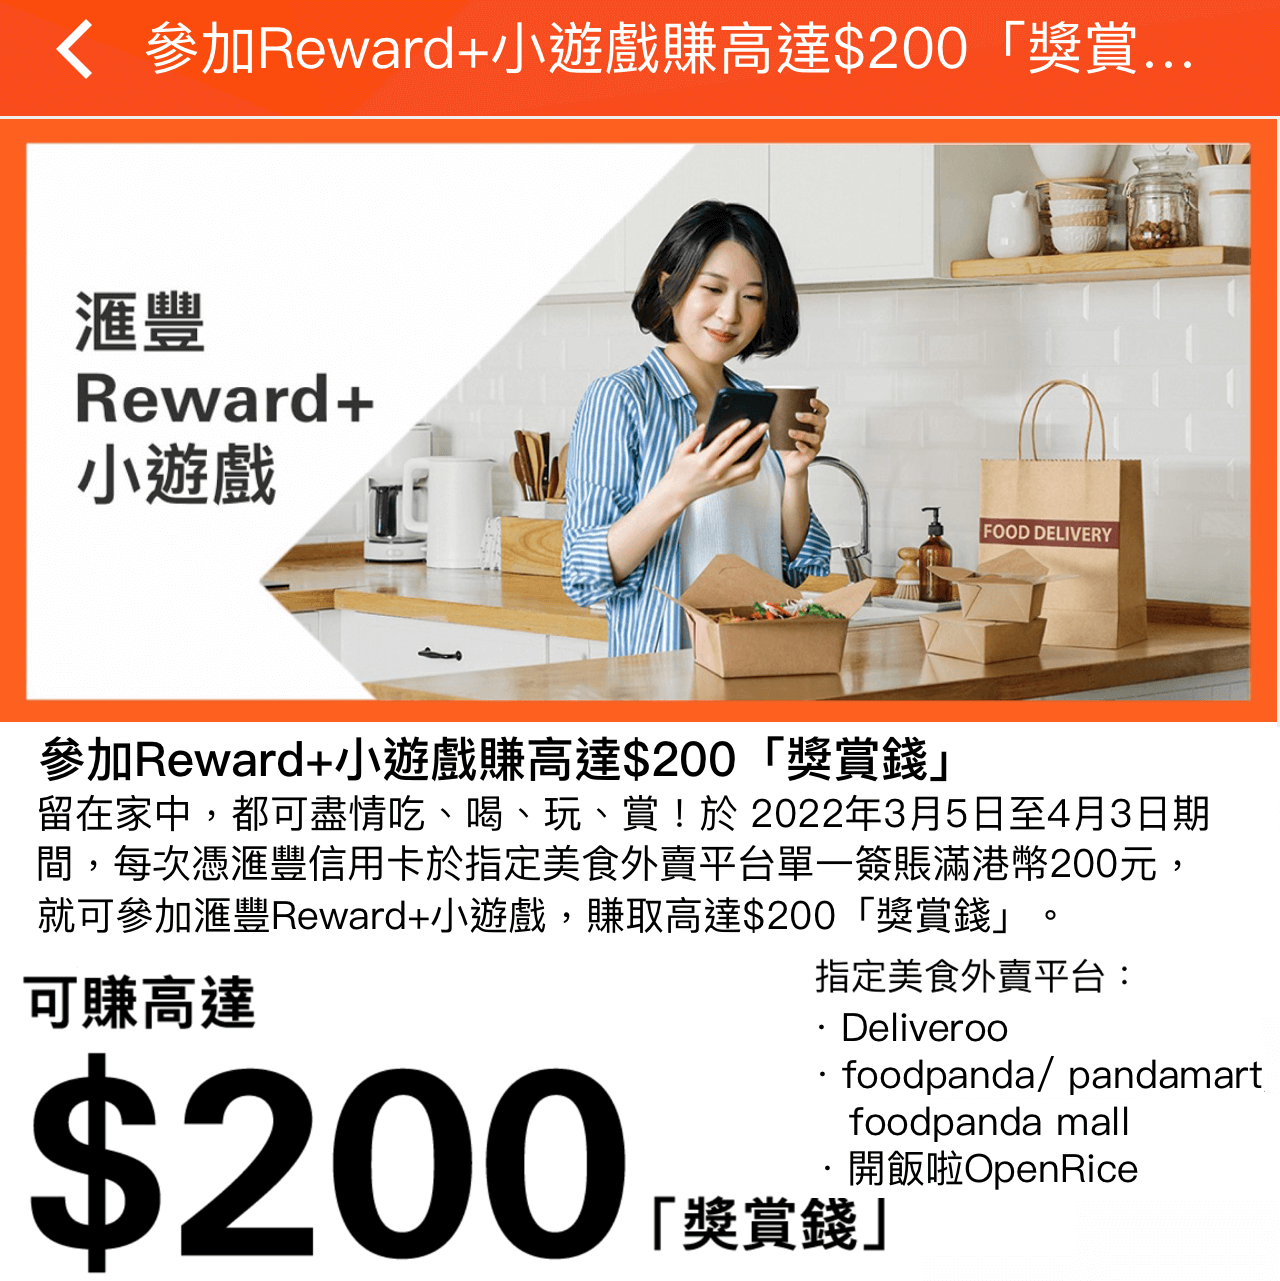 【滙豐信用卡Reward+小遊戲】外賣單一簽賬滿HK$200即可玩Reward+小遊戲！賺高達$200「獎賞錢」！最少都有$5！